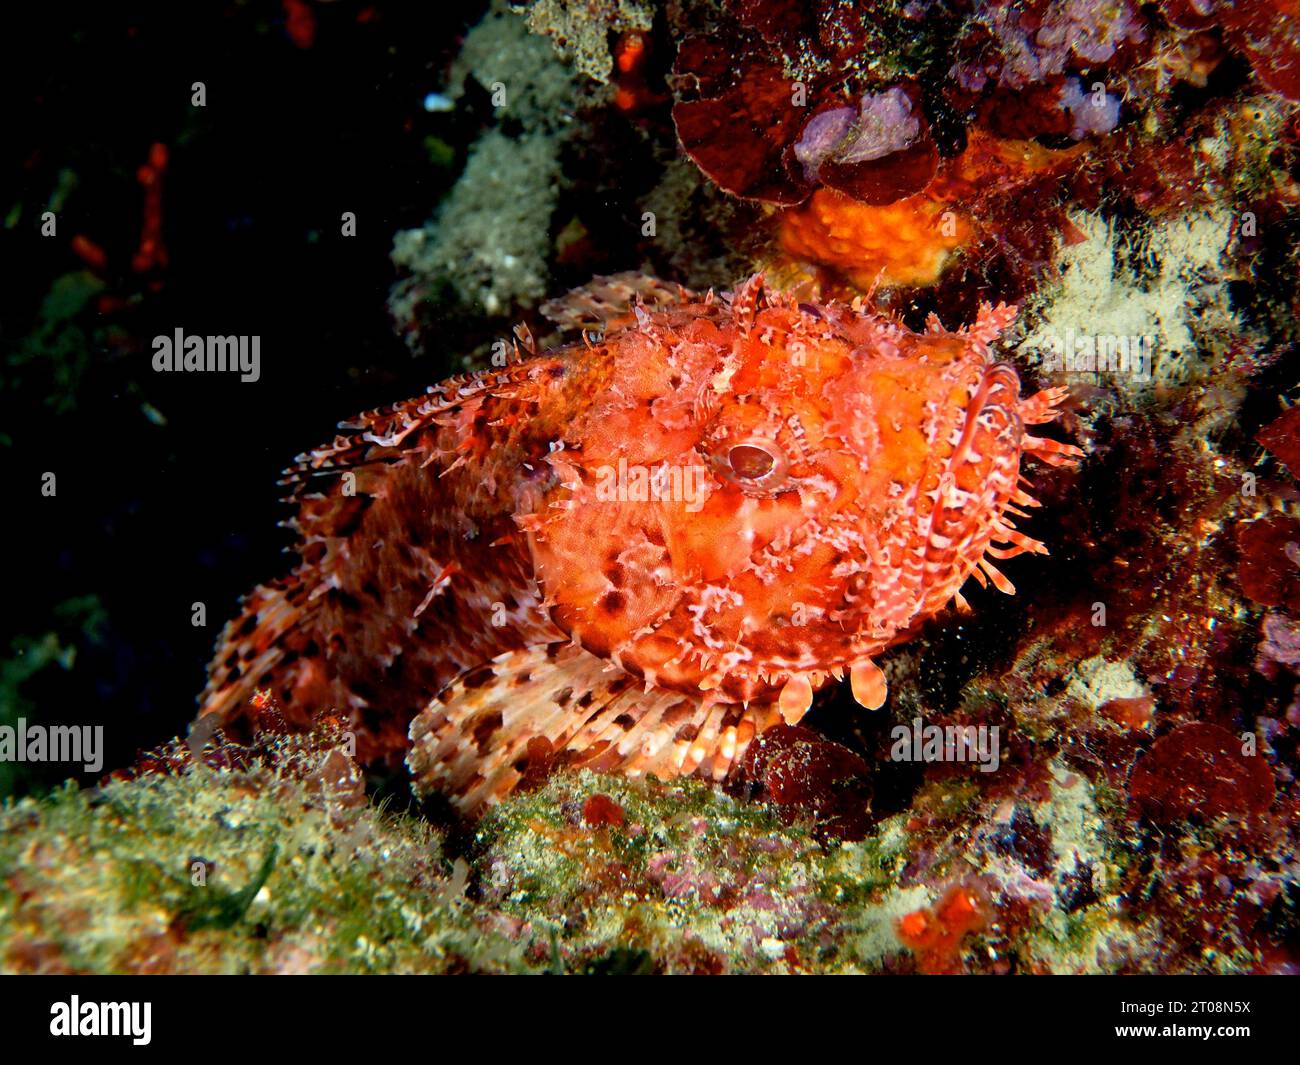 Scorpione rosso (Scorpaena scrofa), scrofa marina. Sito di immersione Marine Reserve Cap de Creus, Rosas, Costa Brava, Spagna, Mar Mediterraneo Foto Stock